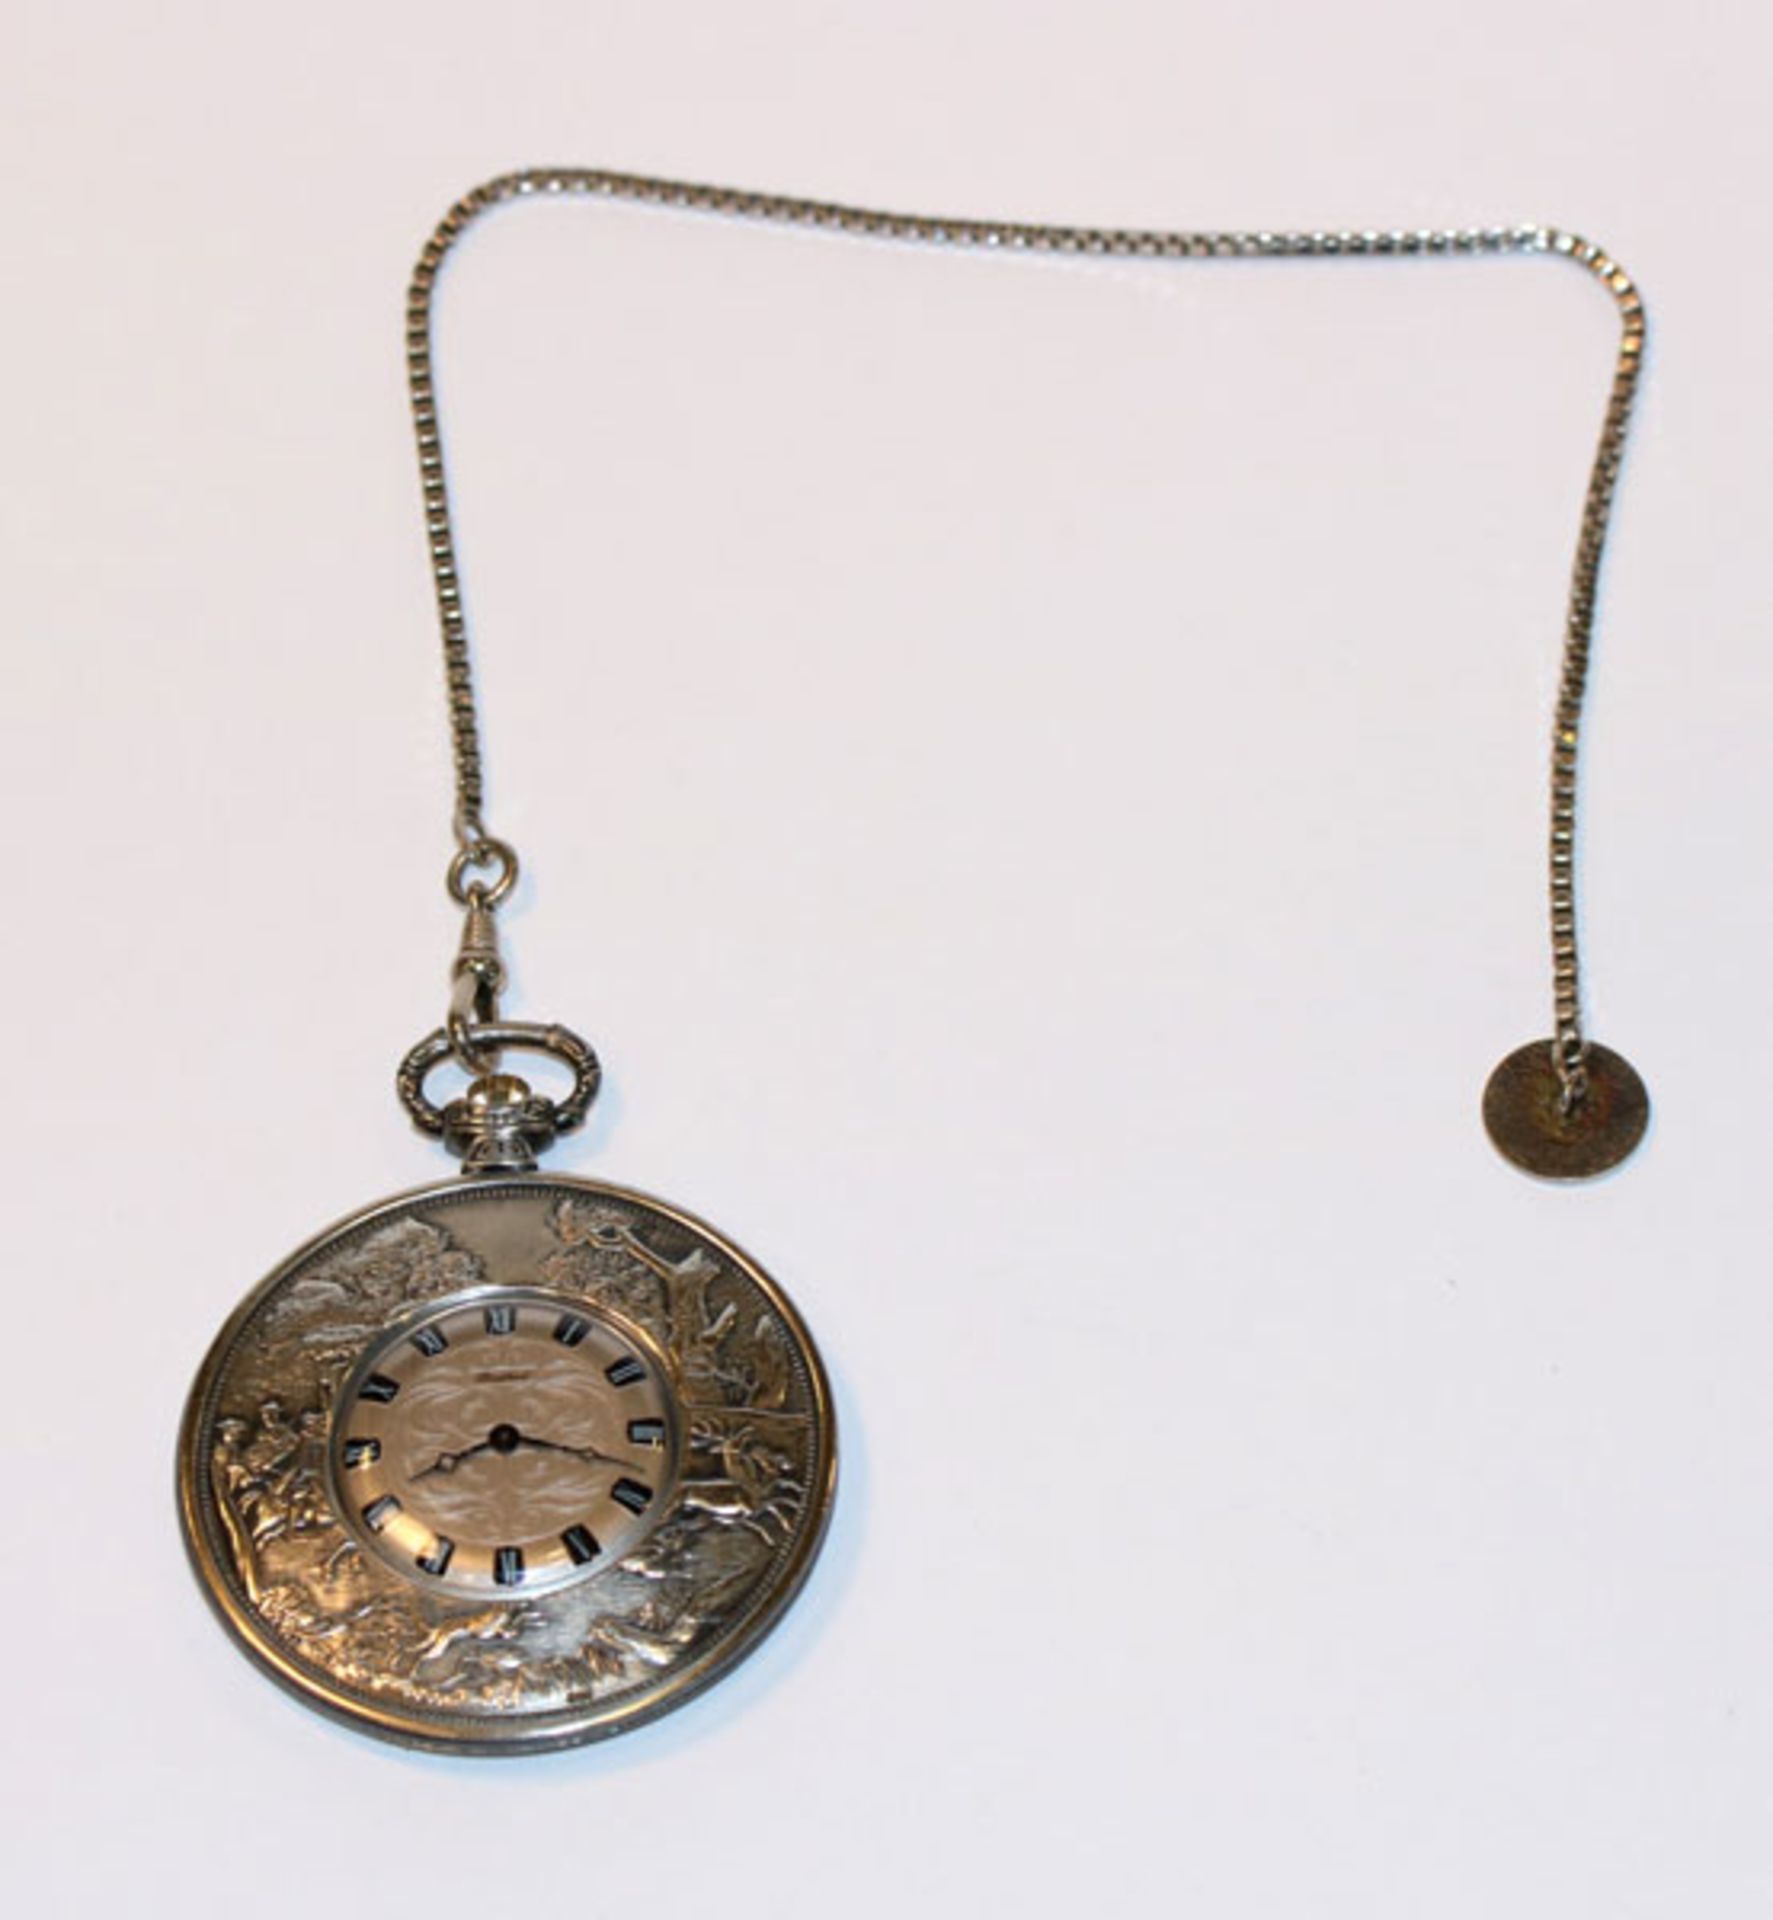 Bergland Silber Taschenuhr mit reliefiertem Jagddekor, D 5 cm, intakt, und Uhrenkette, L 25 cm